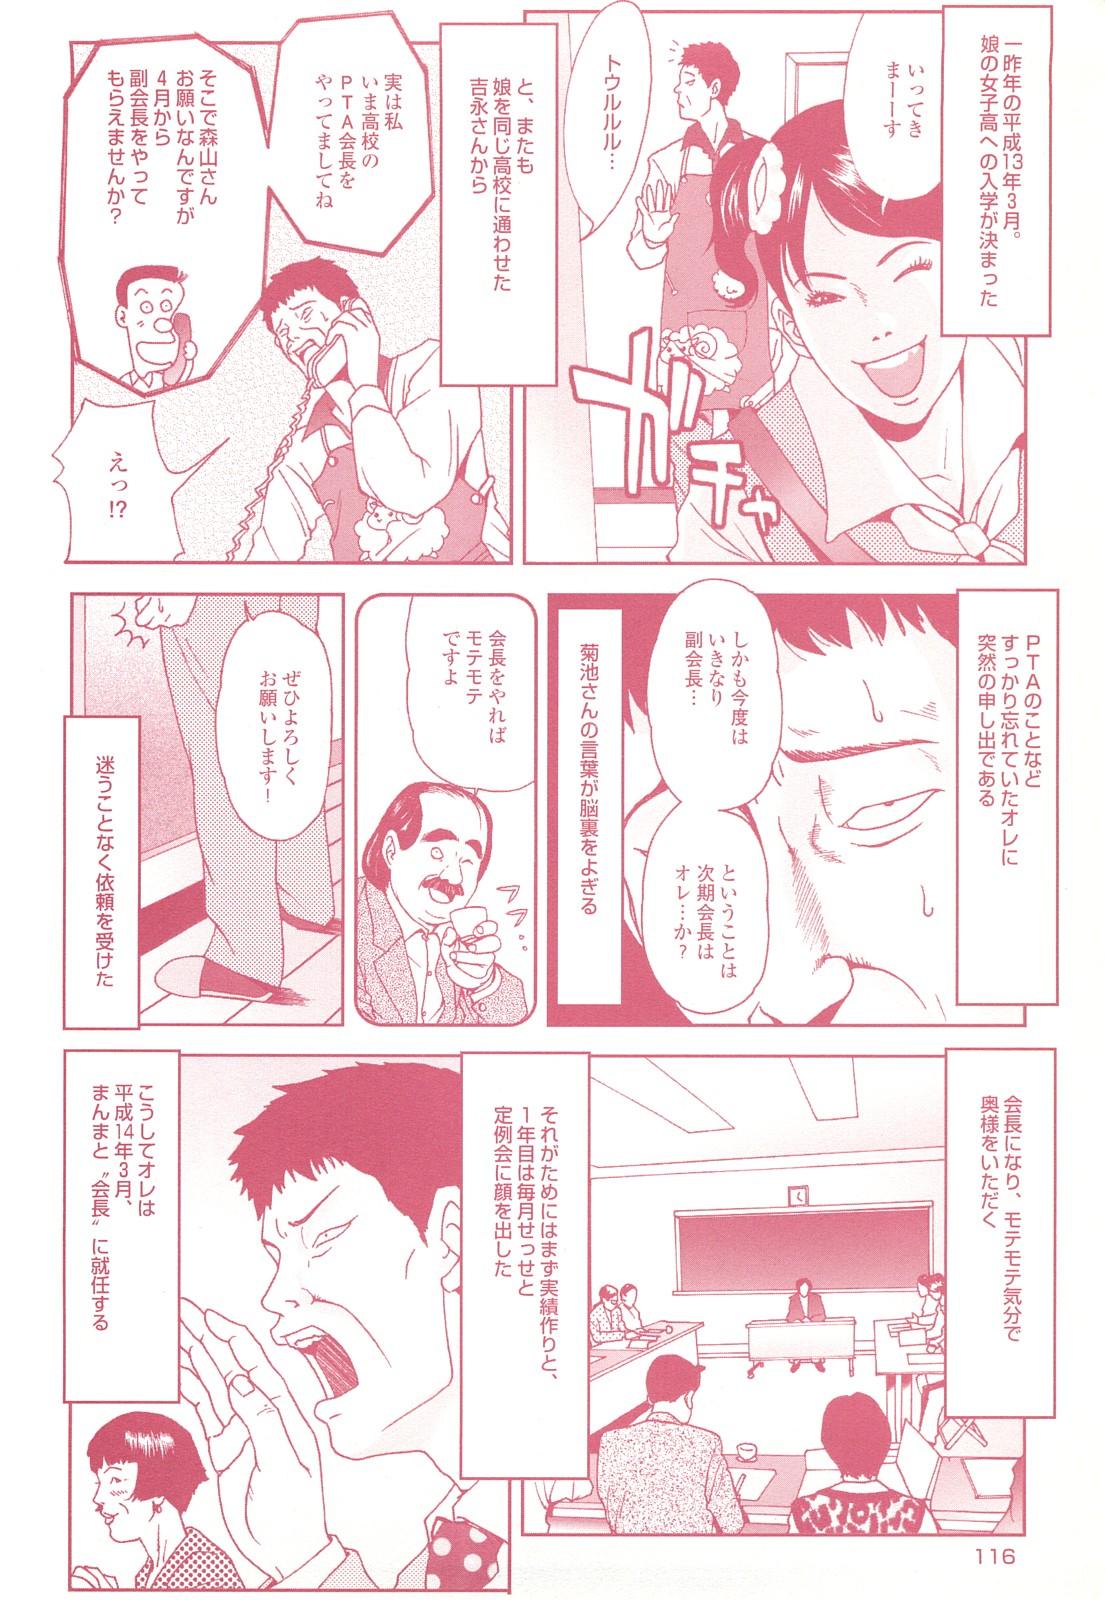 コミック裏モノJAPAN Vol.18 今井のりたつスペシャル号 115